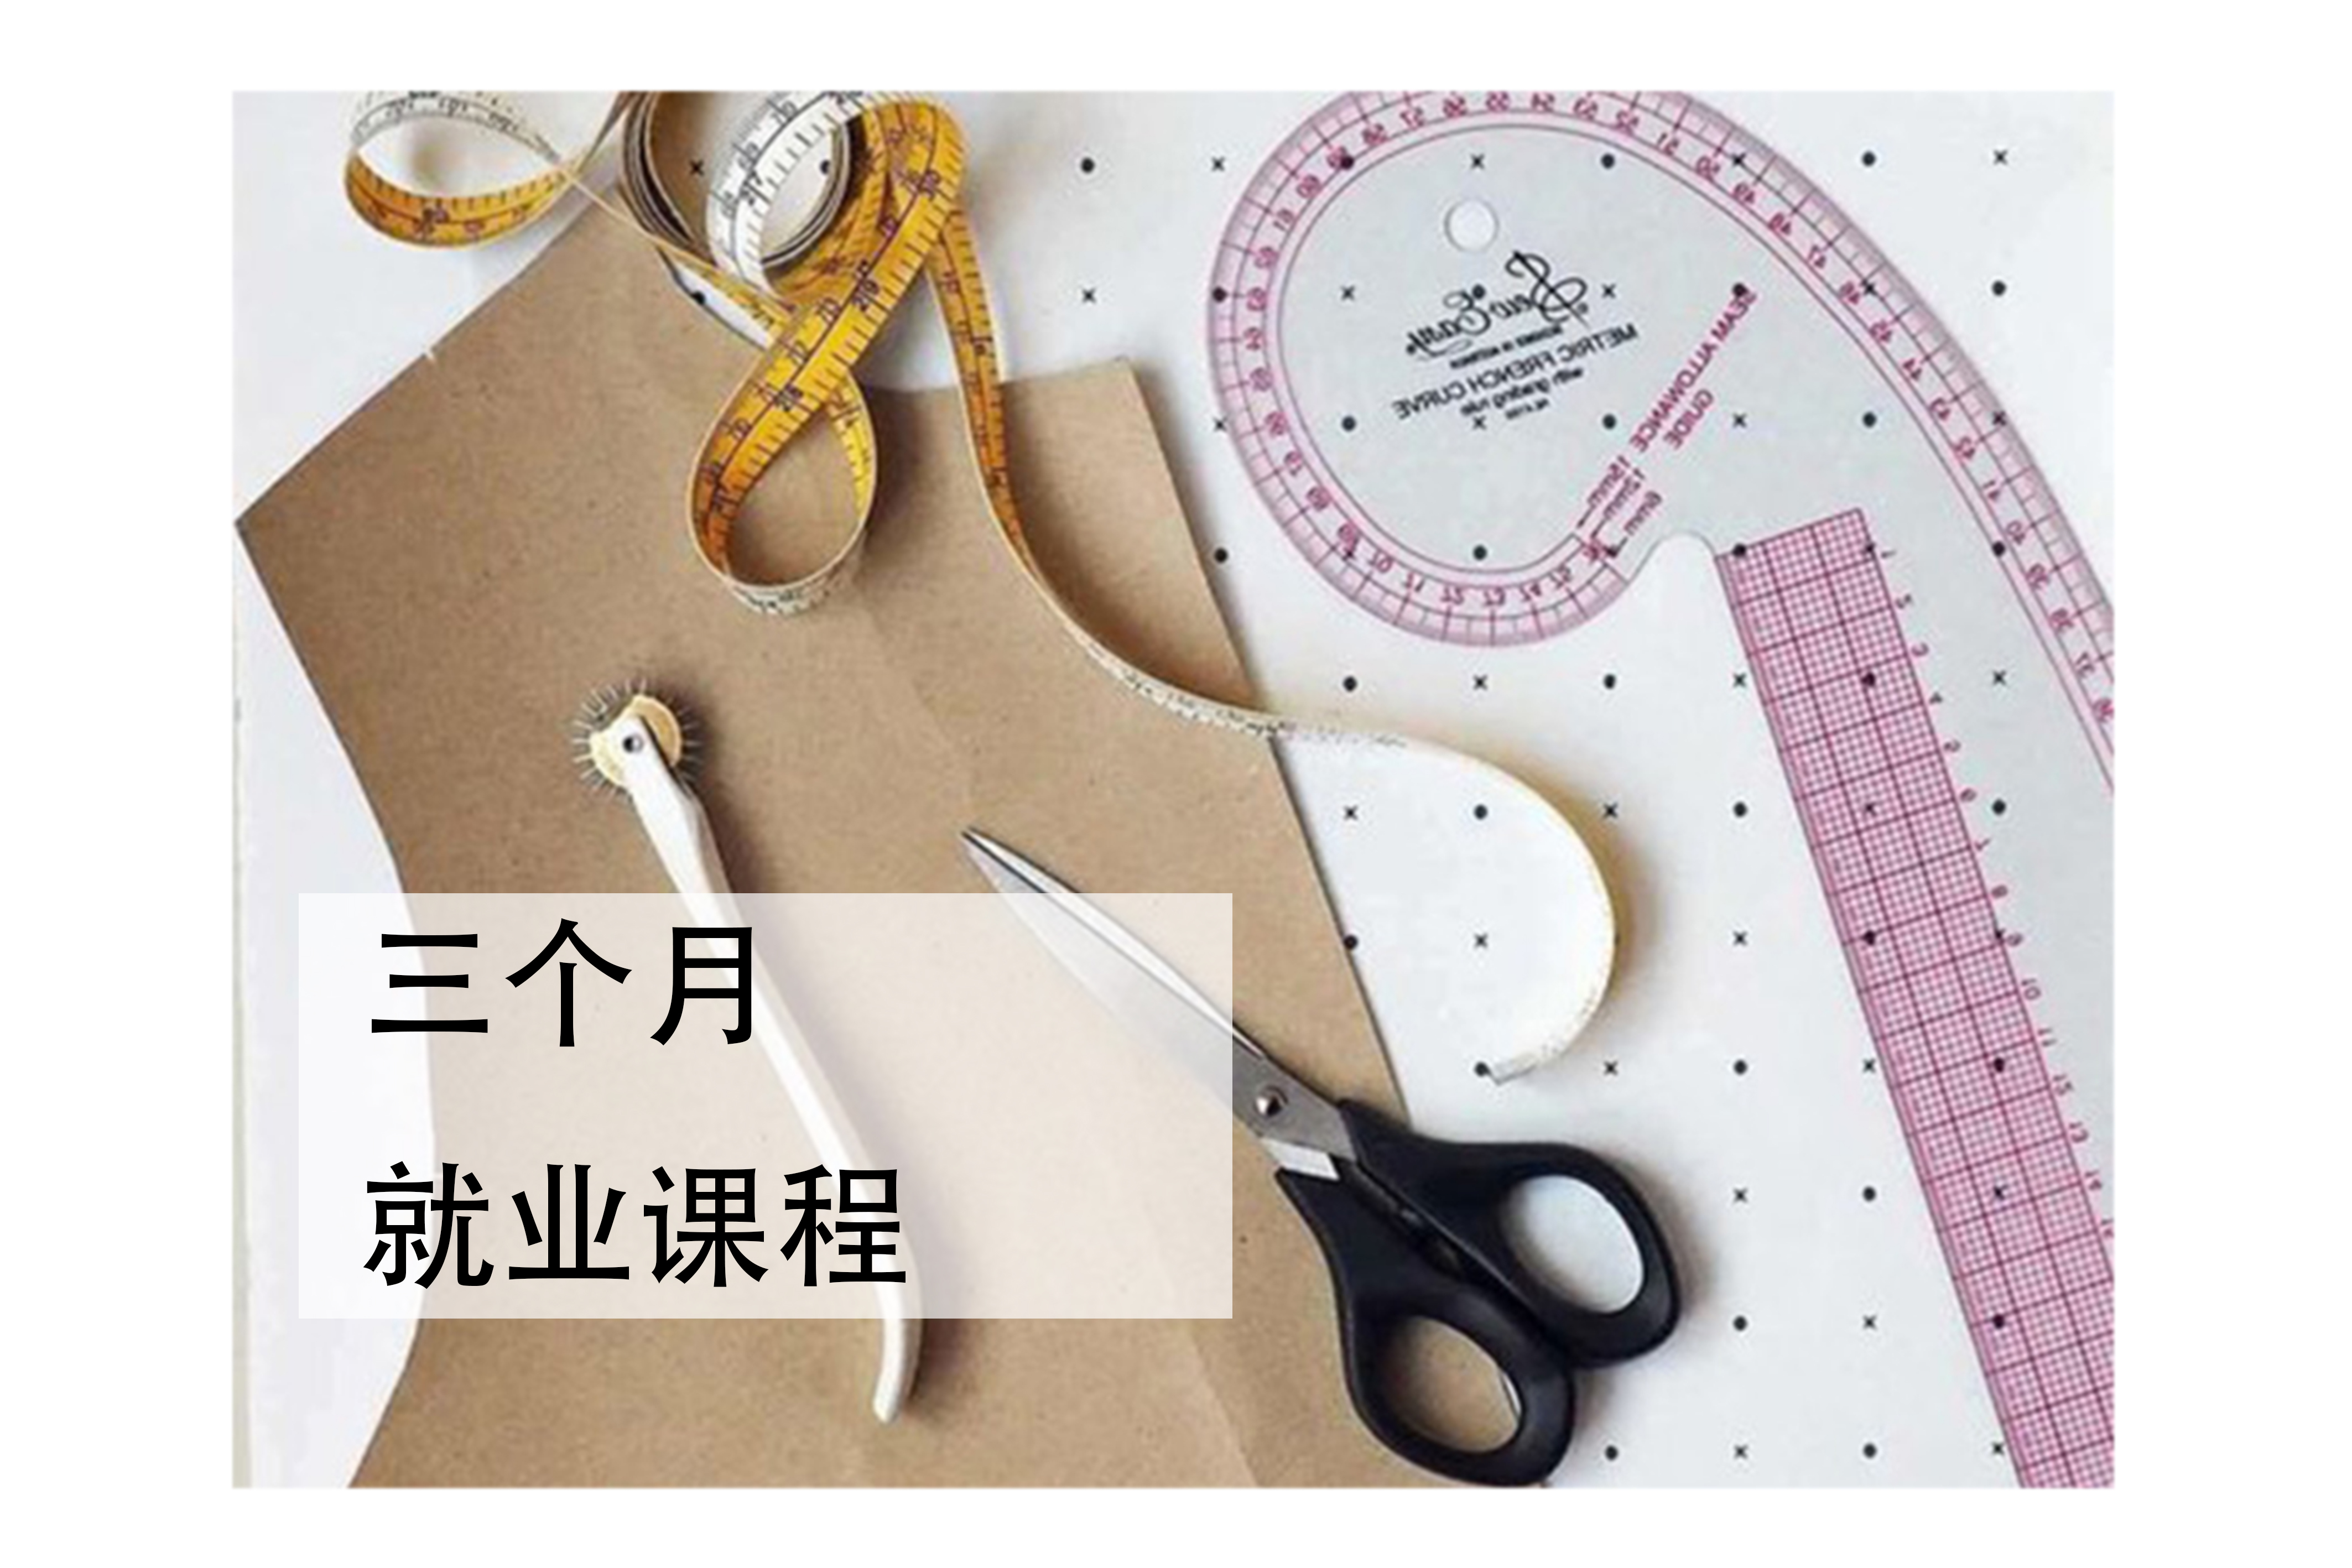 深圳服装设计就业培训课程